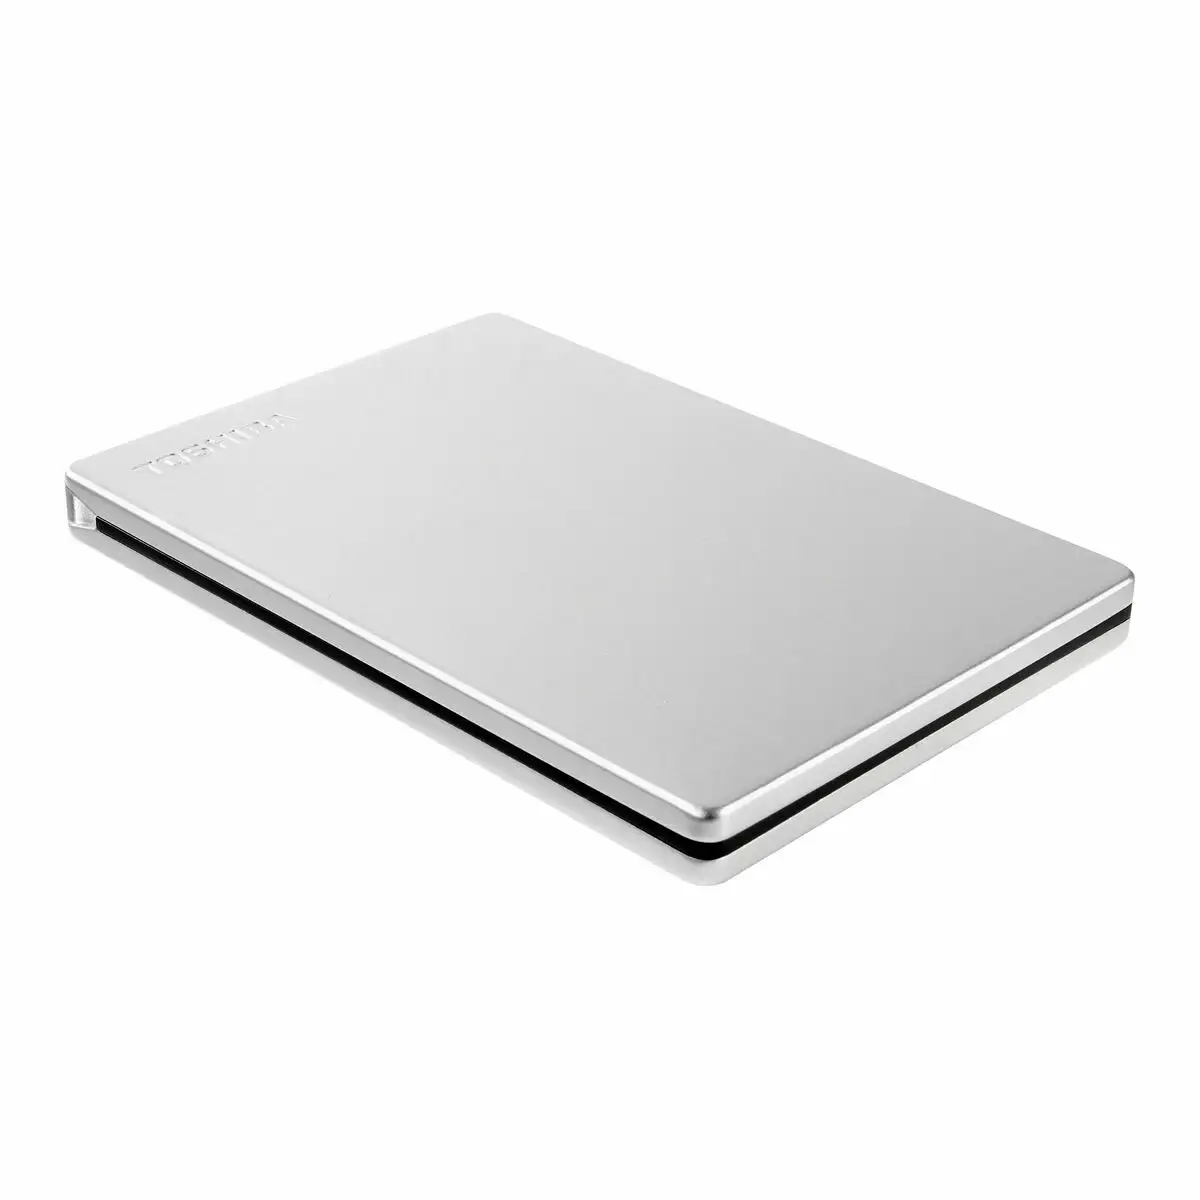 Toshiba HDTB420EK3AA disque dur externe 2 To Noir au meilleur prix